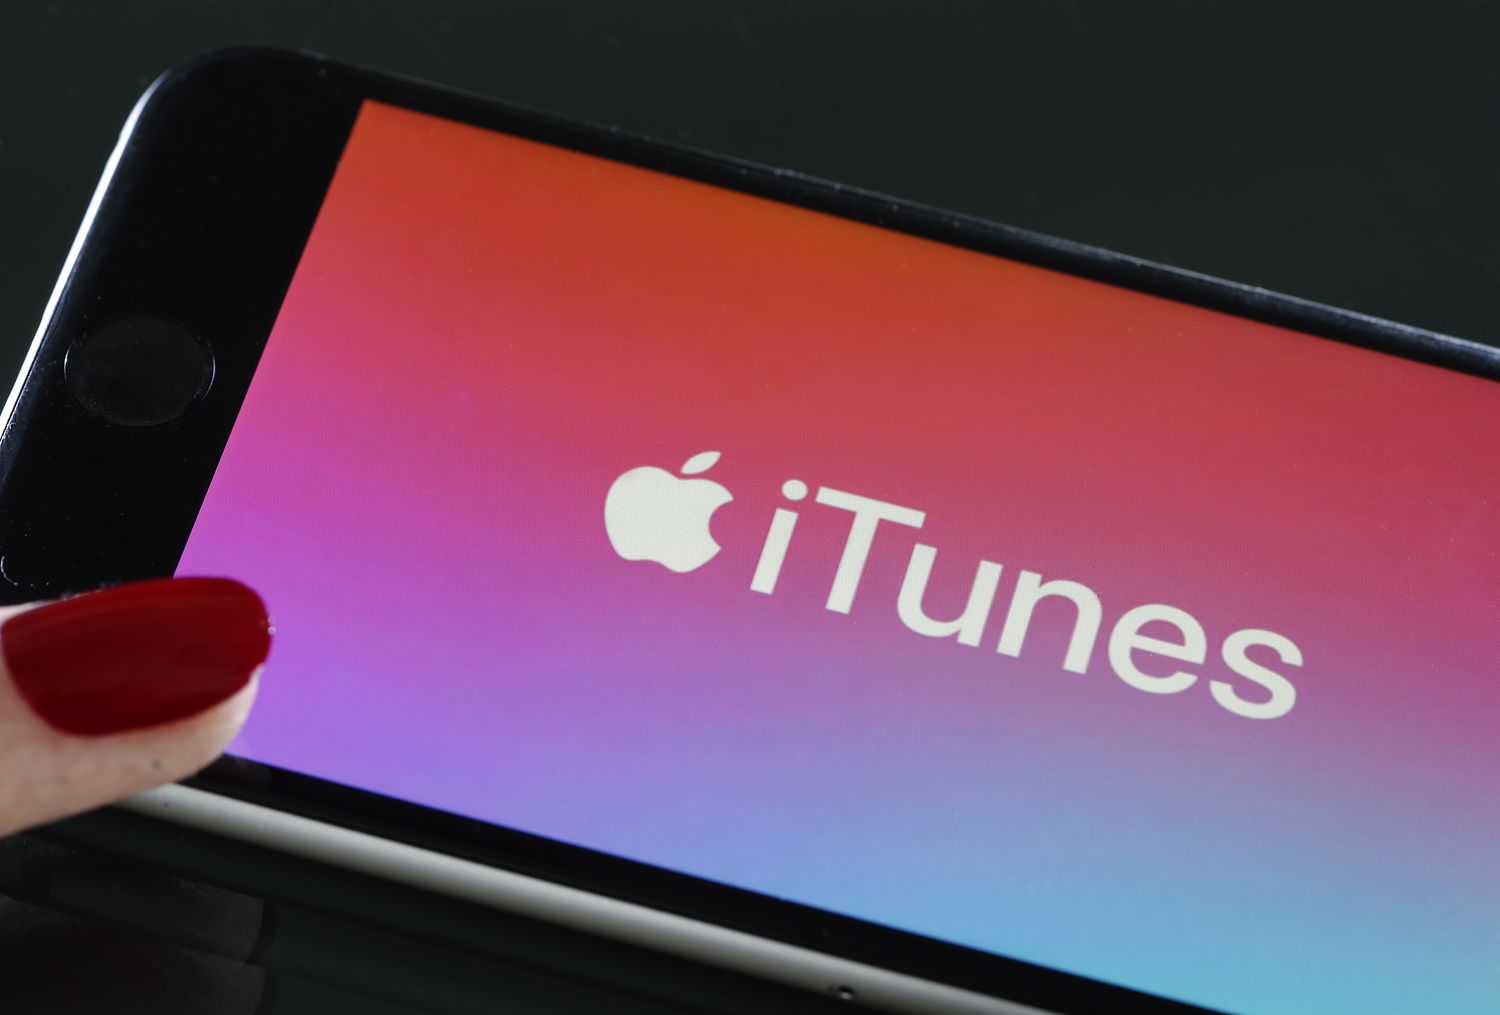 Cài nhạc chuông cho iphone bằng iTunes dễ dàng